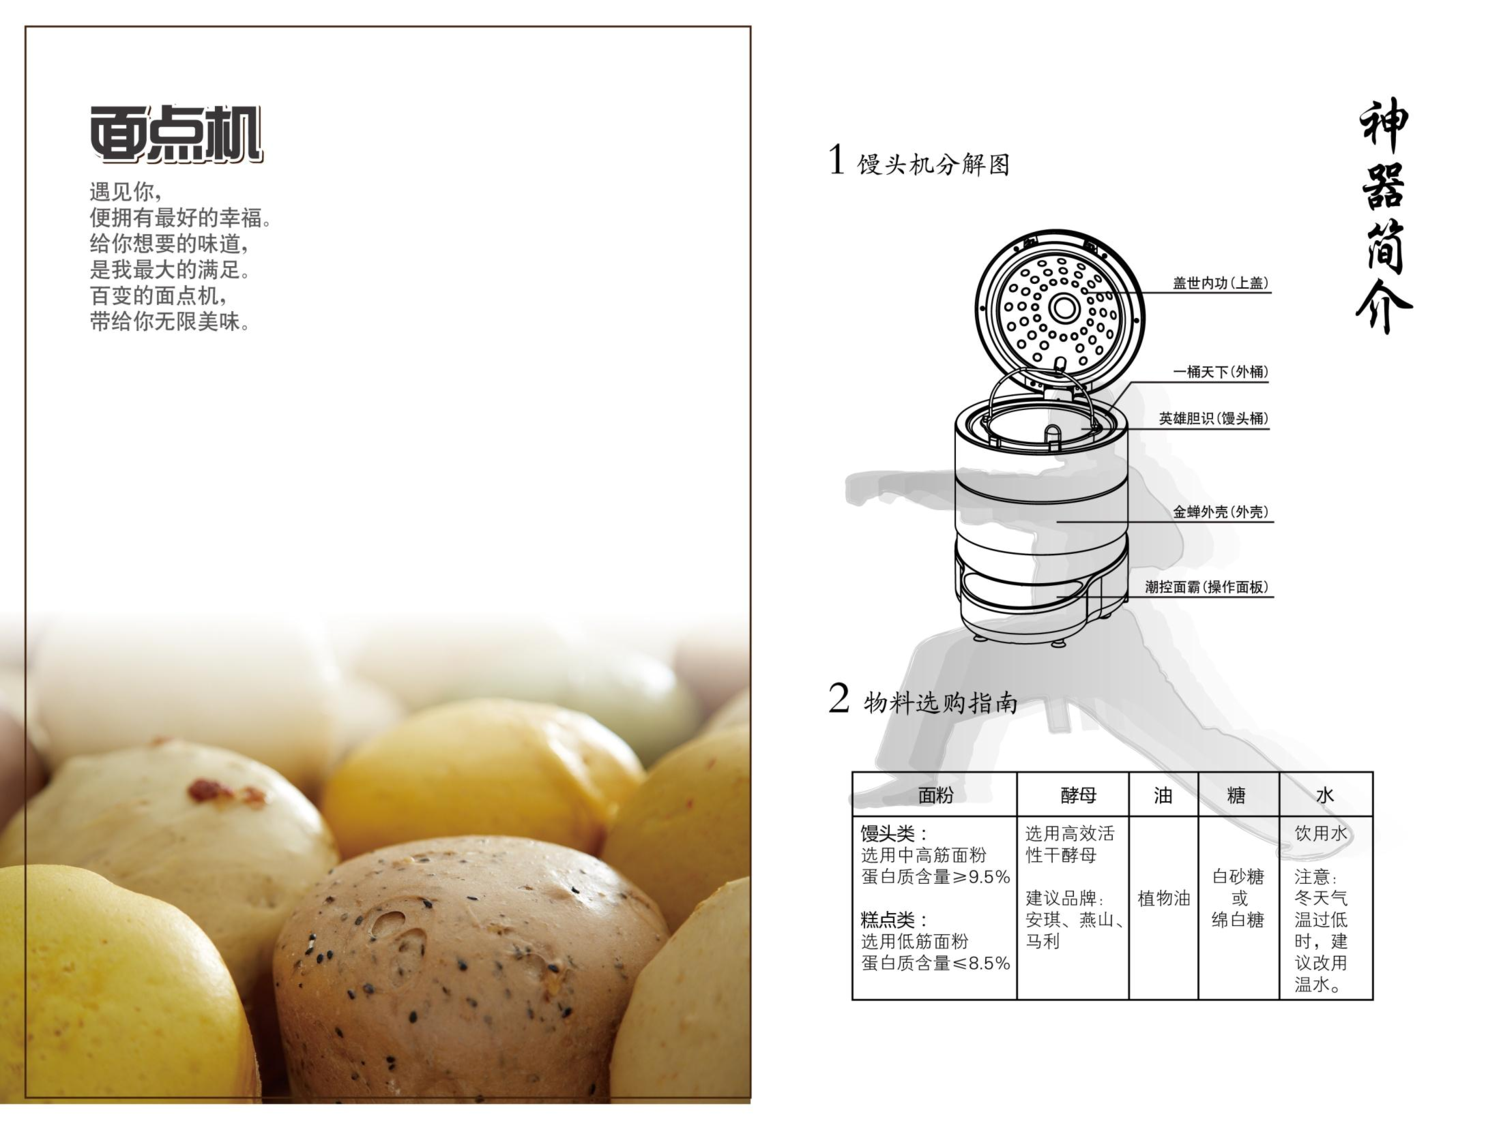 九阳 Joyyoung 面点机专用食谱 使用说明书 第1页